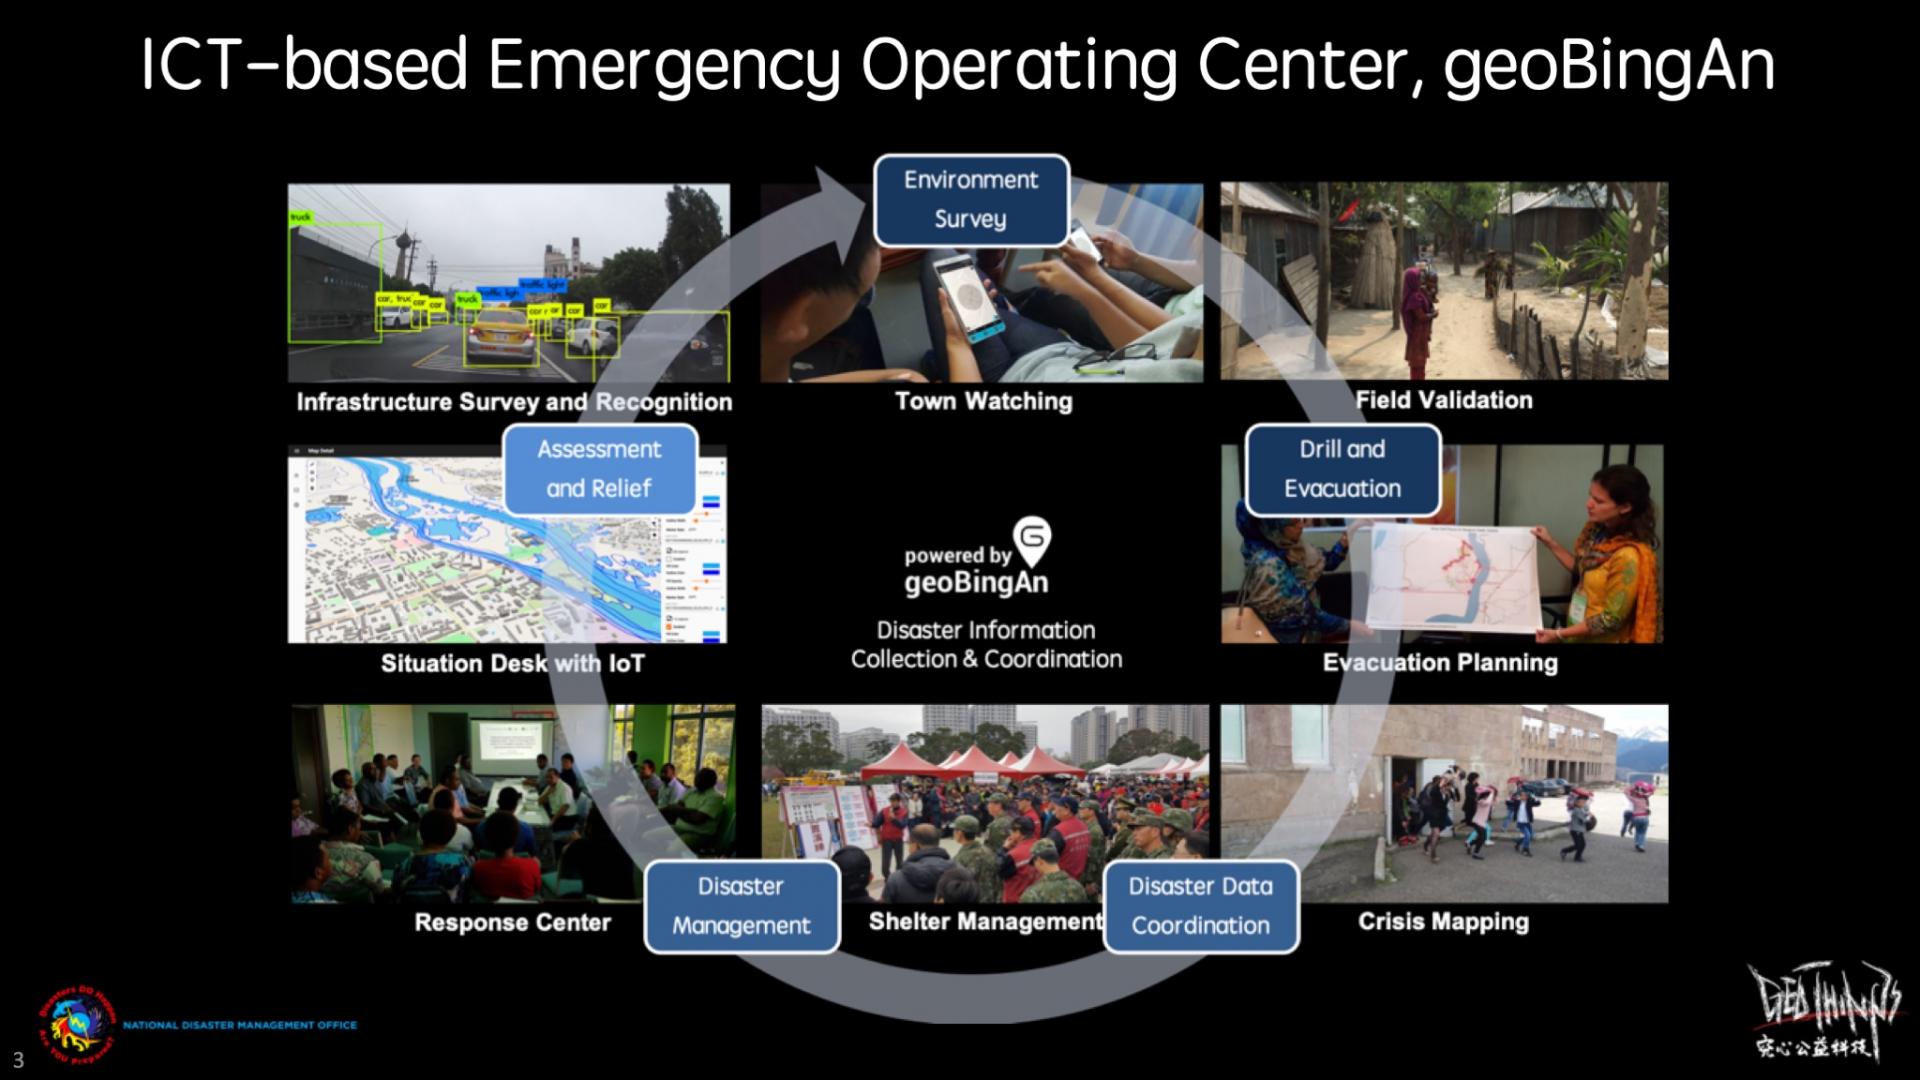 Le service de TIC humanitaire, geoBingAn, est un service intégré pour l'intervention avant, pendant et après une catastrophe